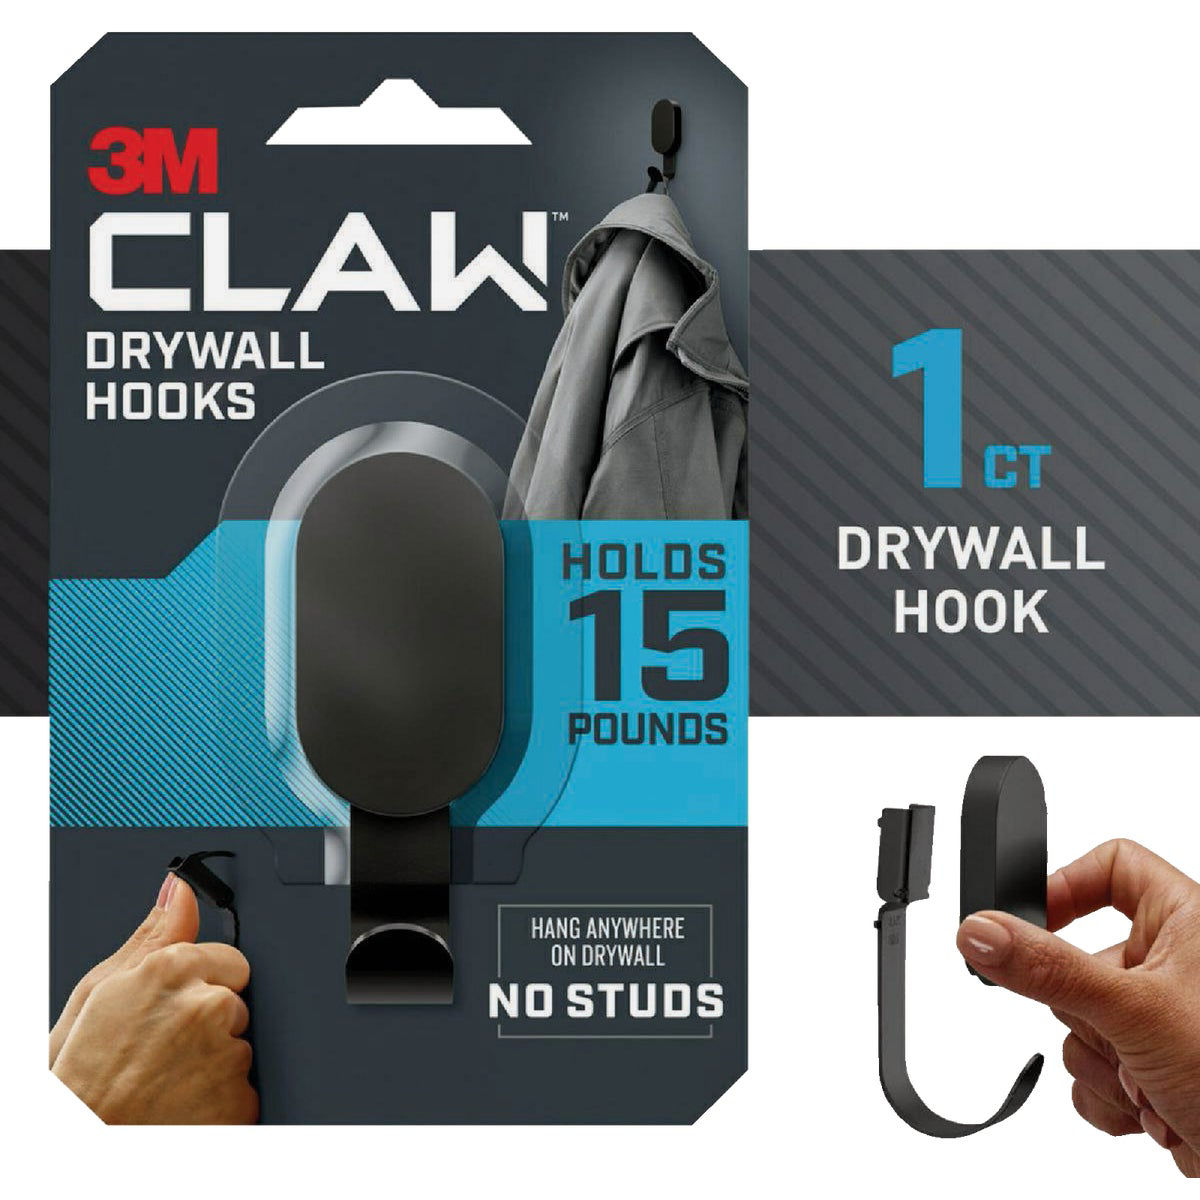 3M Claw 15 Lb. Black Drywall Hook